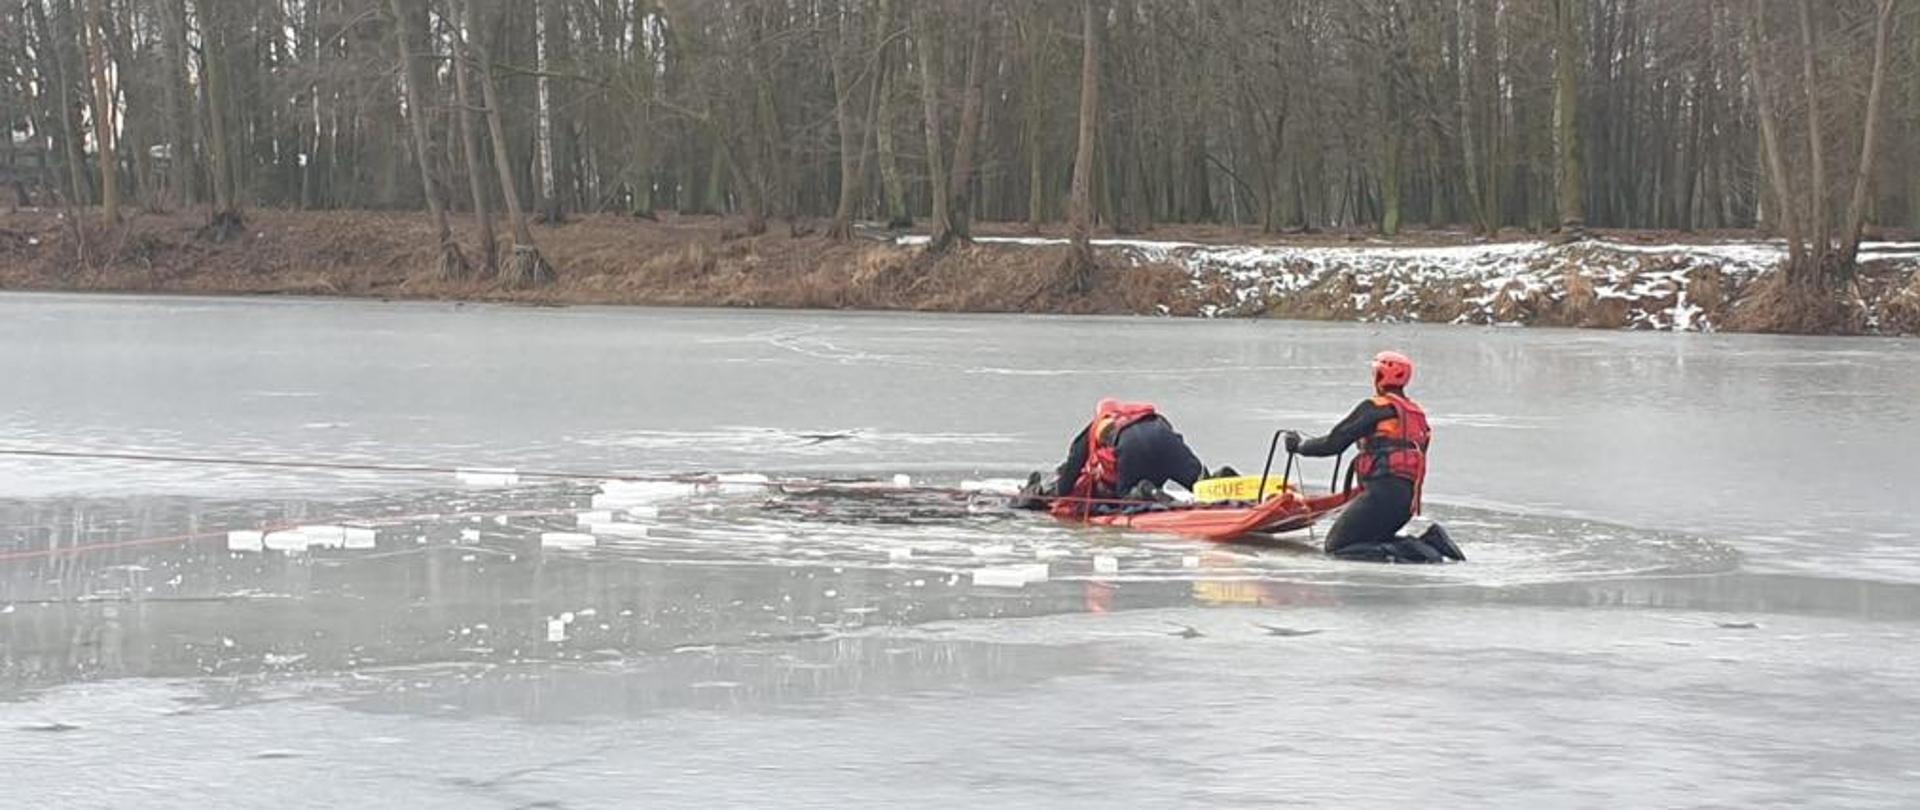 Na zdjęciu ratownicy PSP zabezpieczeni na lodzie podczas ćwiczeń z deską lodową